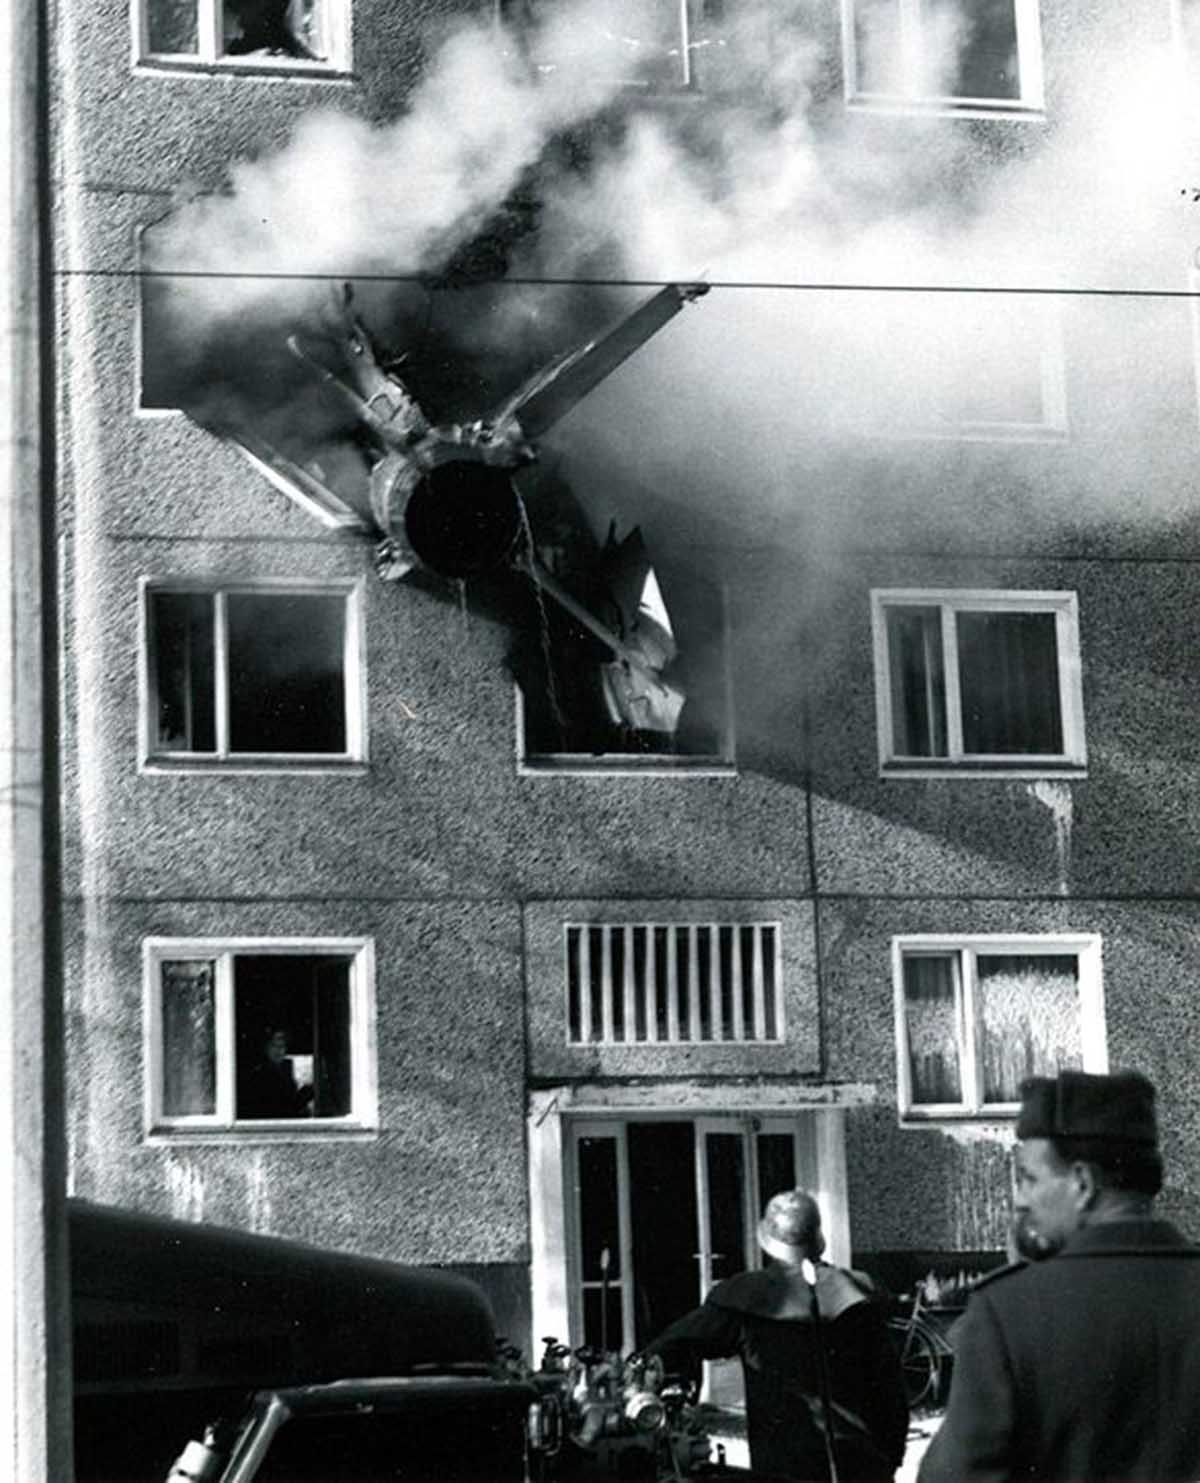 MiG-21 s'est écrasé dans un immeuble est-allemand, 1975